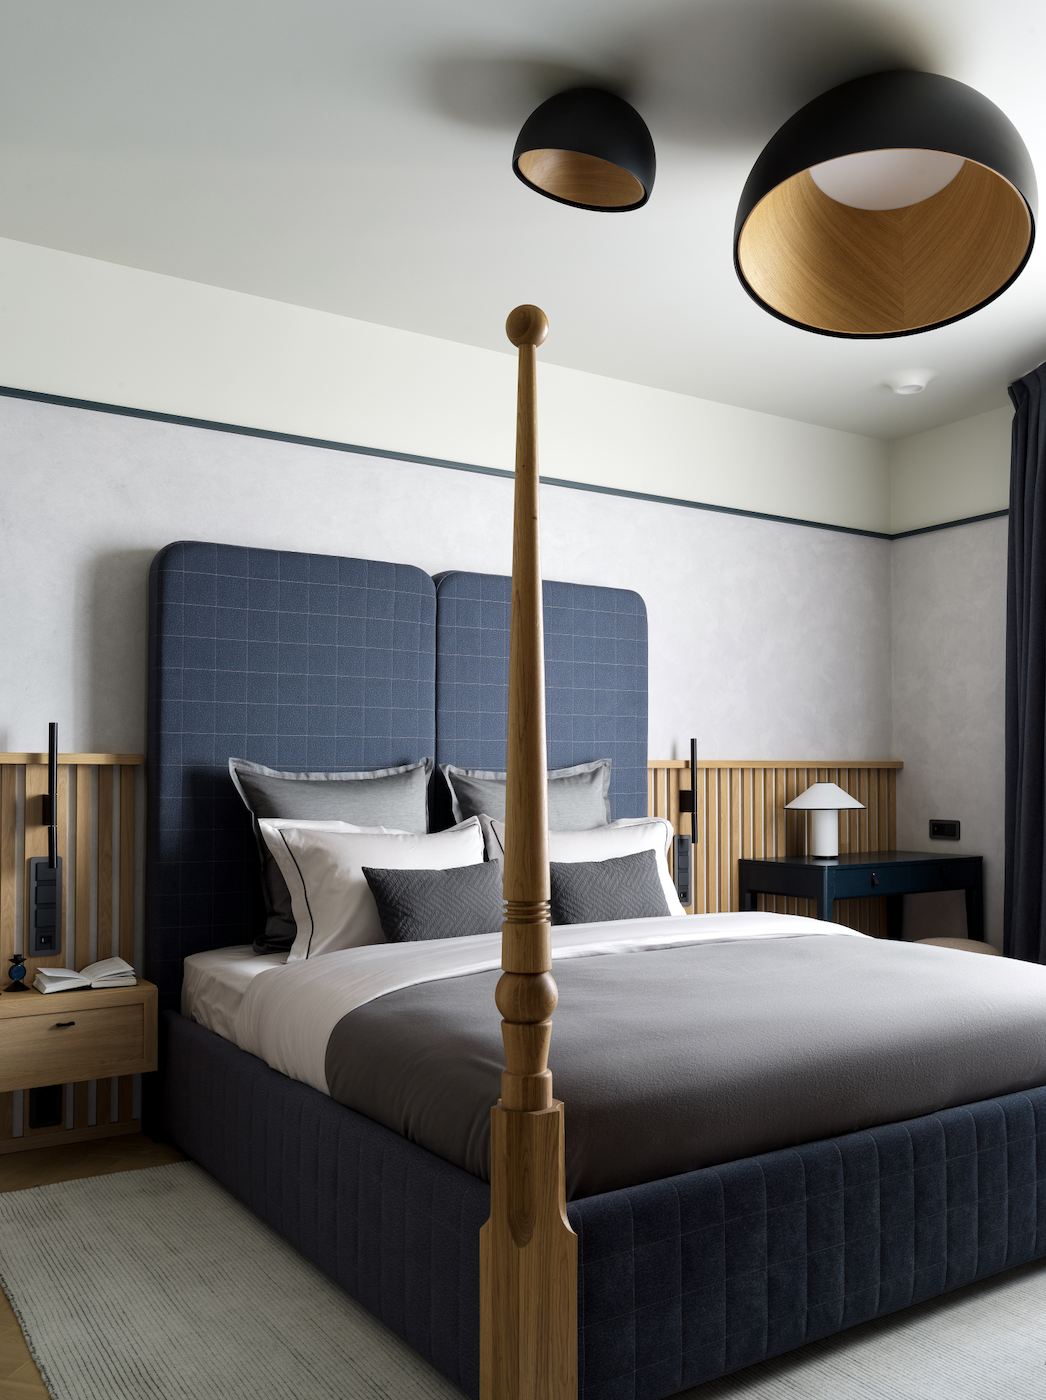 Dormitorio principal moderno y elegante en azul marino y madera